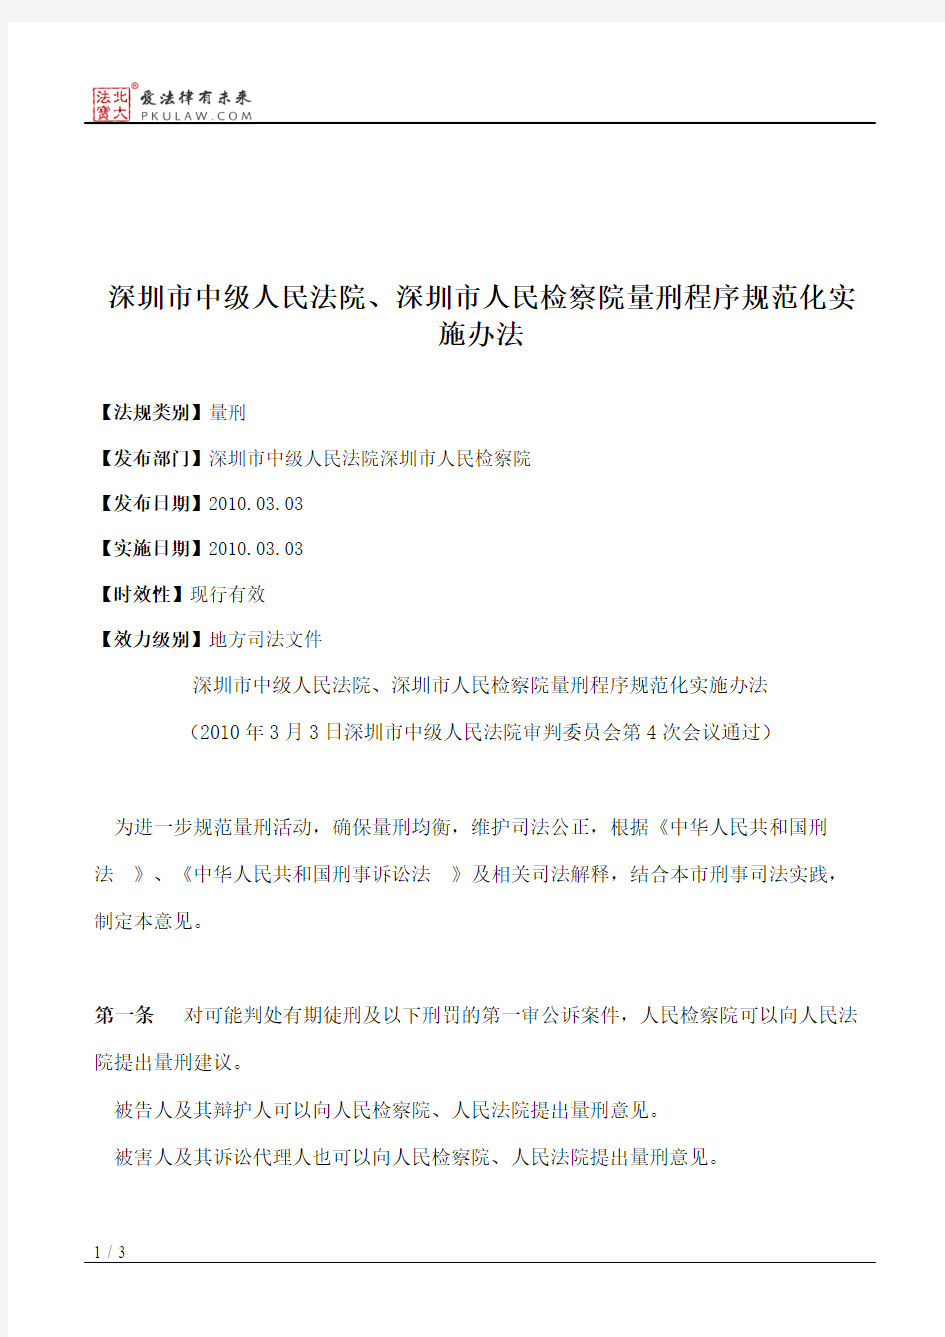 深圳市中级人民法院、深圳市人民检察院量刑程序规范化实施办法